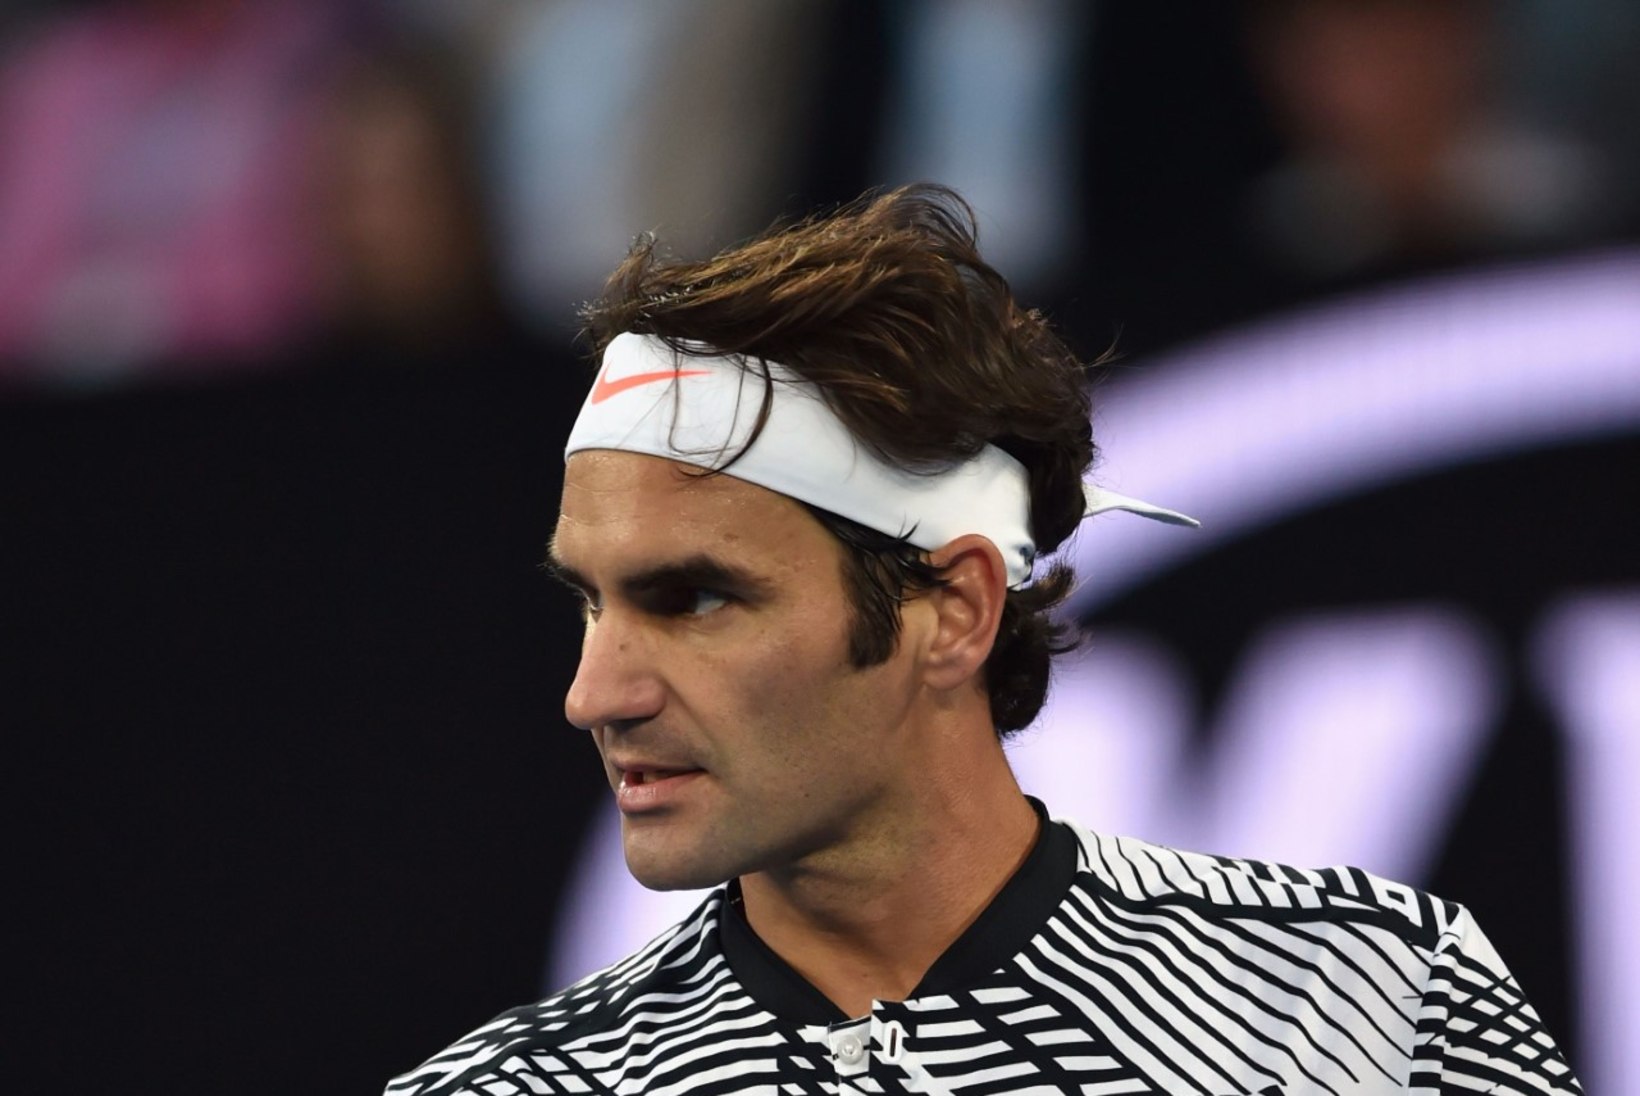 Roger Federeri finaalikoht – ainulaadne saavutus 43 aasta jooksul